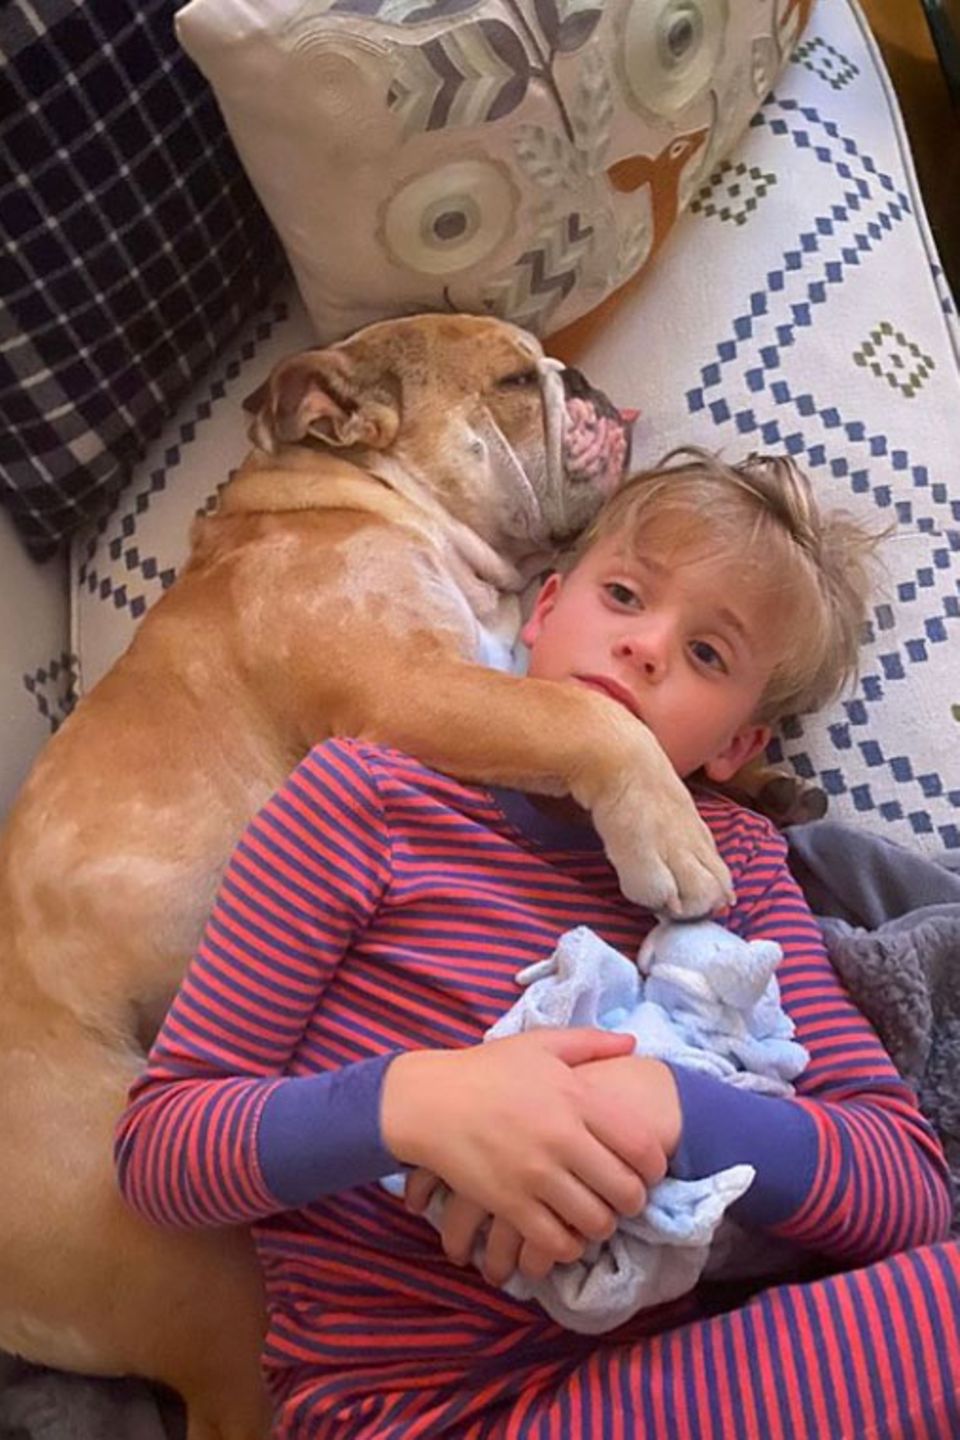 "Zum Glück gibt es Hunde", schreibt Reese Witherspoon zu diesem Kuschel-Foto, das ihren Sohn eng umschlungen mit Hundedame Lou zeigt. Mit so viel Liebe ist die häusliche Quarantäne für Tennessee doch gleich ein wenig erträglicher.